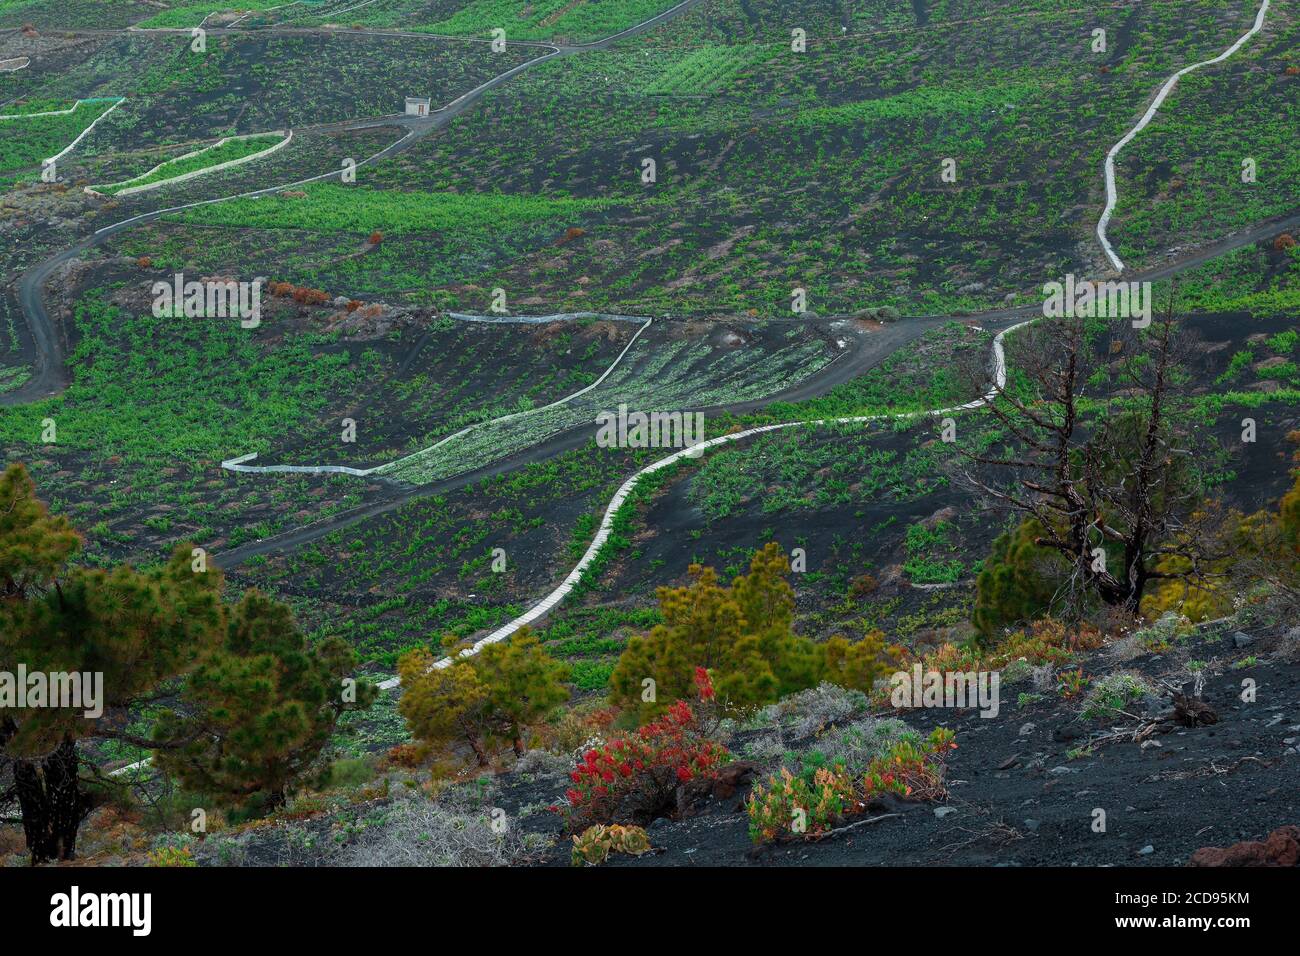 Spanien, Kanarische Inseln, La Palma, Blick auf einen Weinberg in einer ozeanischen und vulkanischen Umgebung Stockfoto